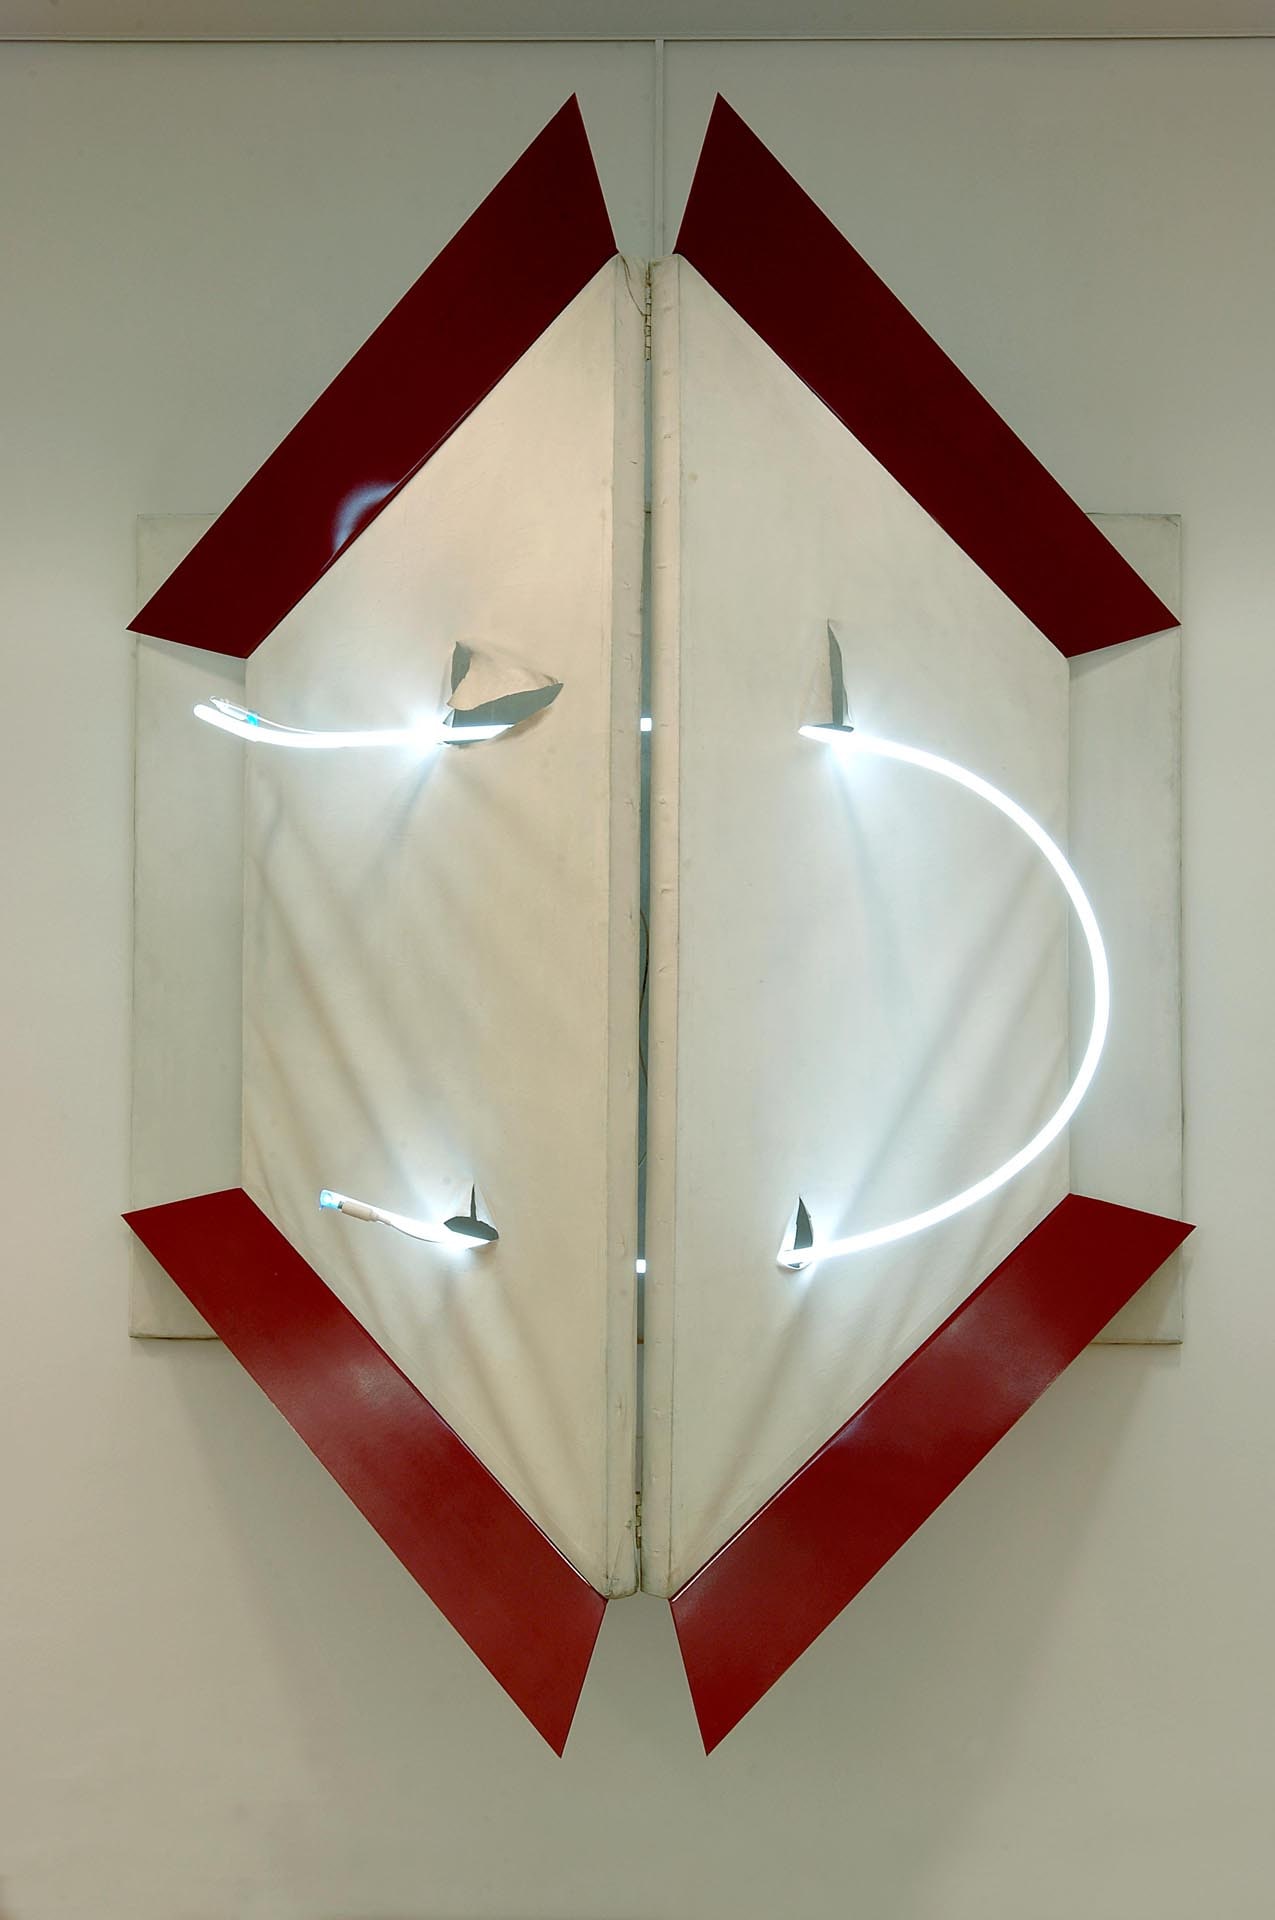 Mario Merz - Nella strada - 1967 - Tela bianca sagomata, materia plastica e tubo fluorescente - Dono dell’artista per il Museo Sperimentale, Torino, 1967